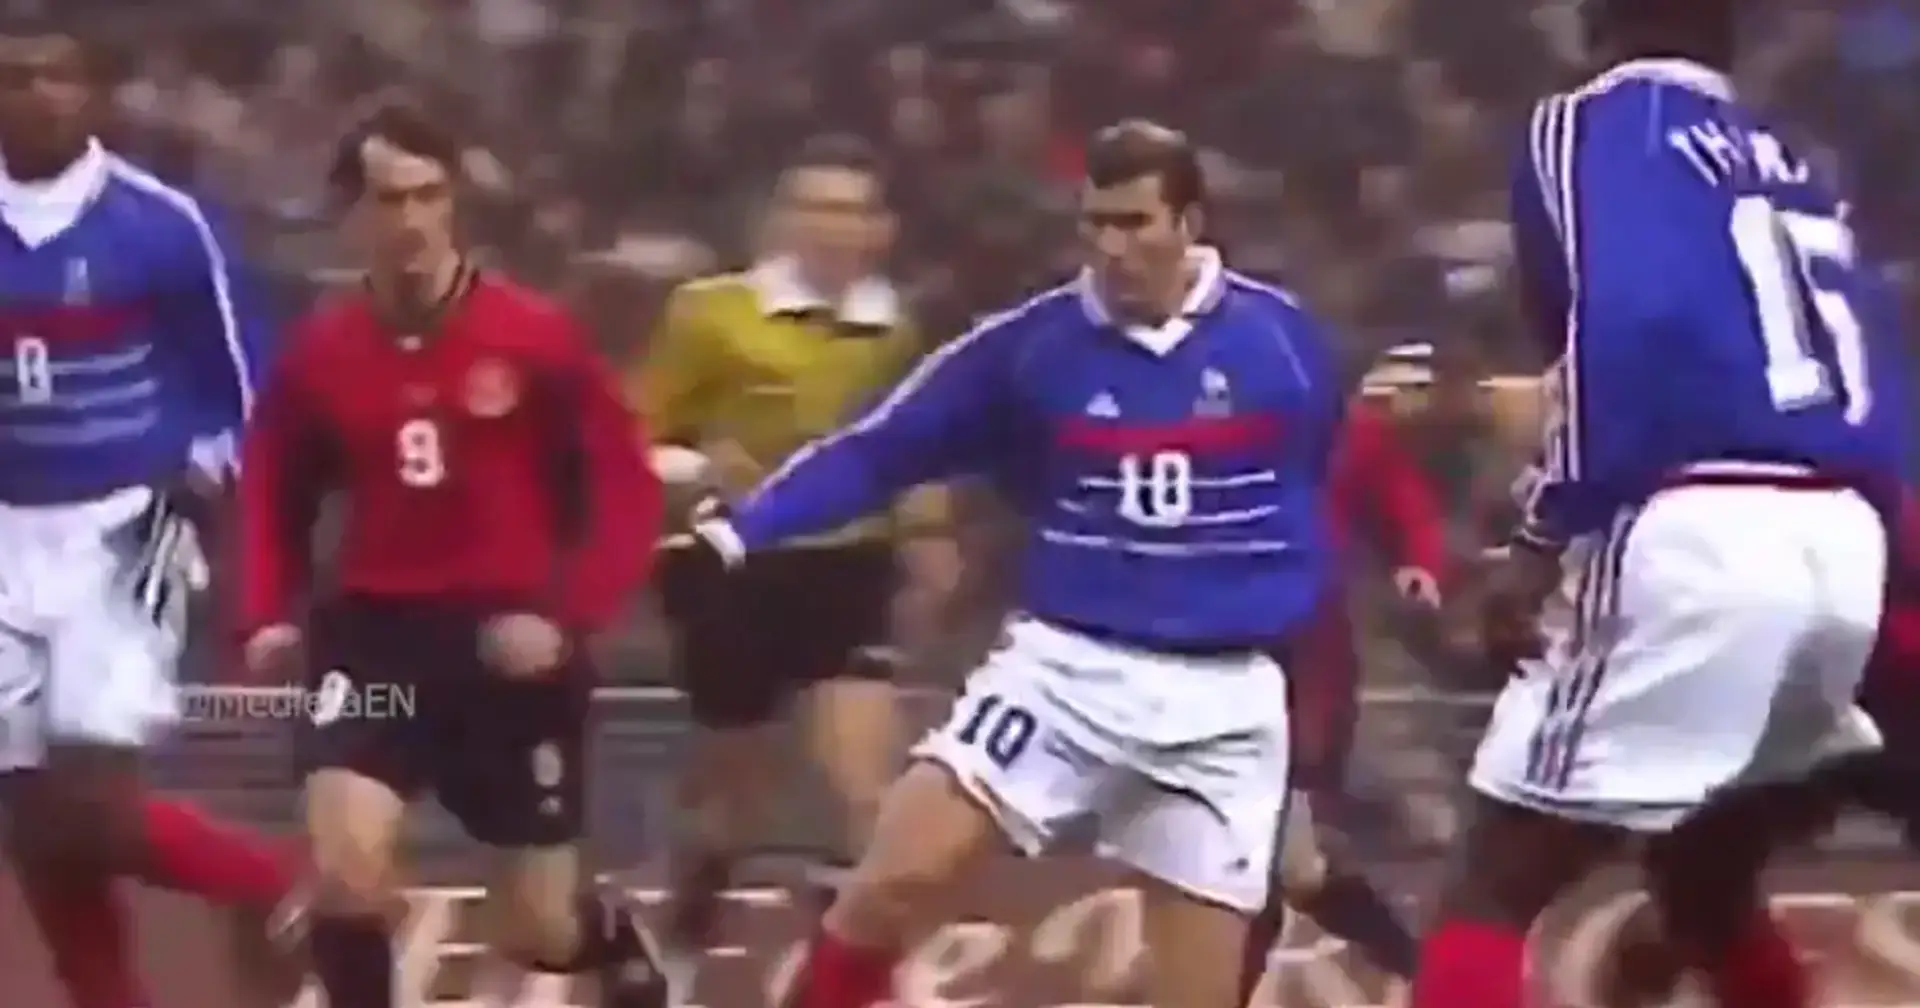 Das Meisterstück von Zidane, das du sicher noch nicht gesehen hast. Er hat Spanien im Alleingang vernichtet